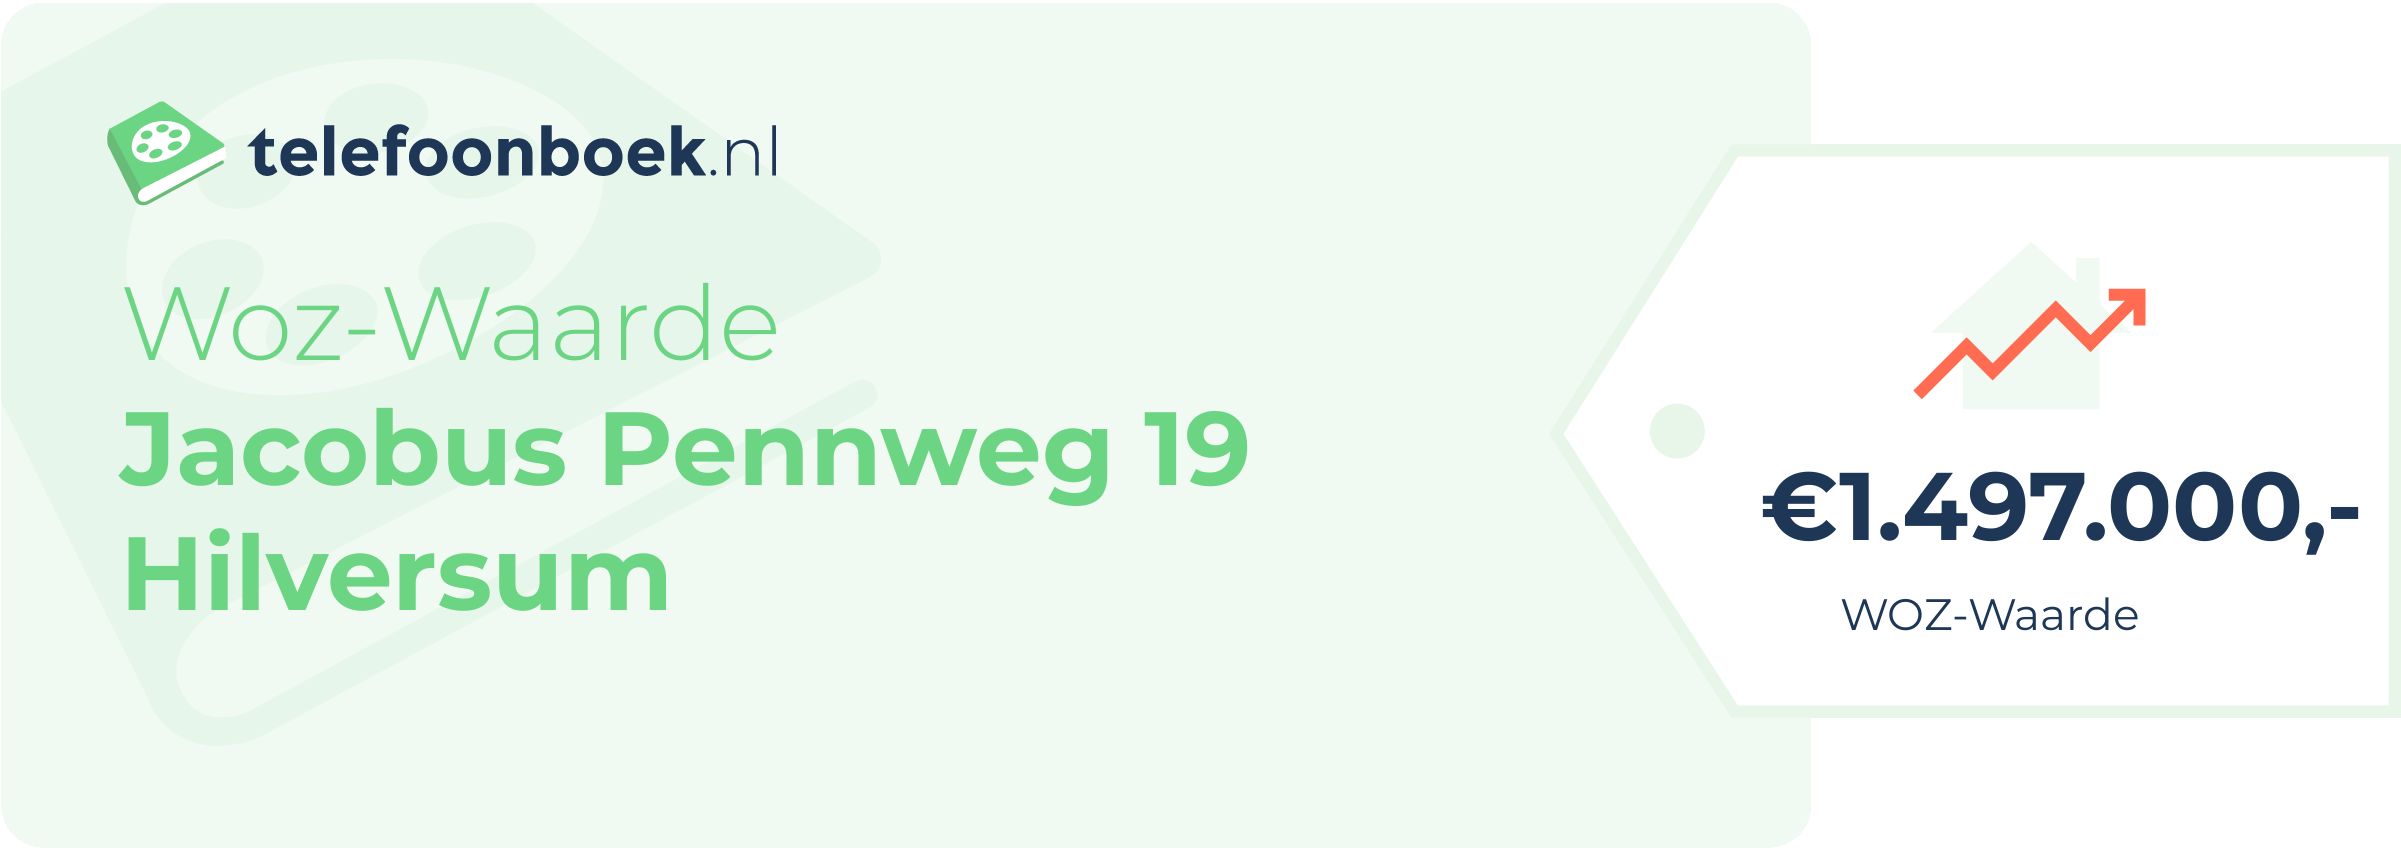 WOZ-waarde Jacobus Pennweg 19 Hilversum